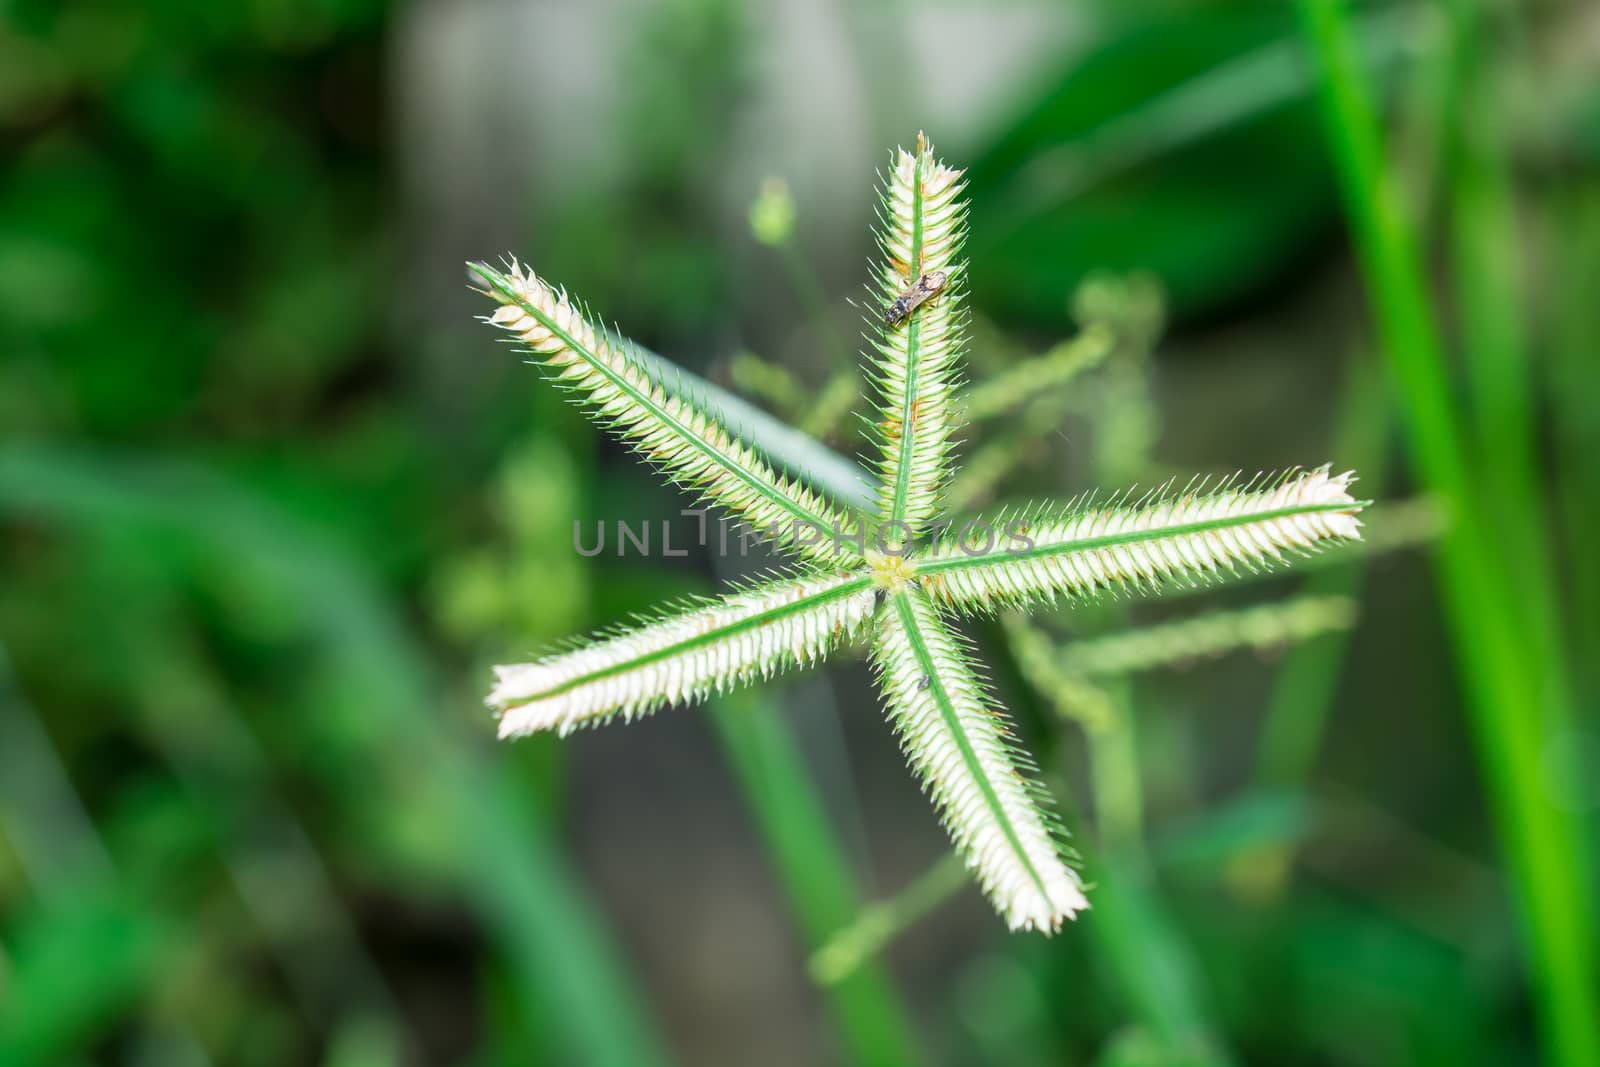 local Thai star grass flower by faa069913827